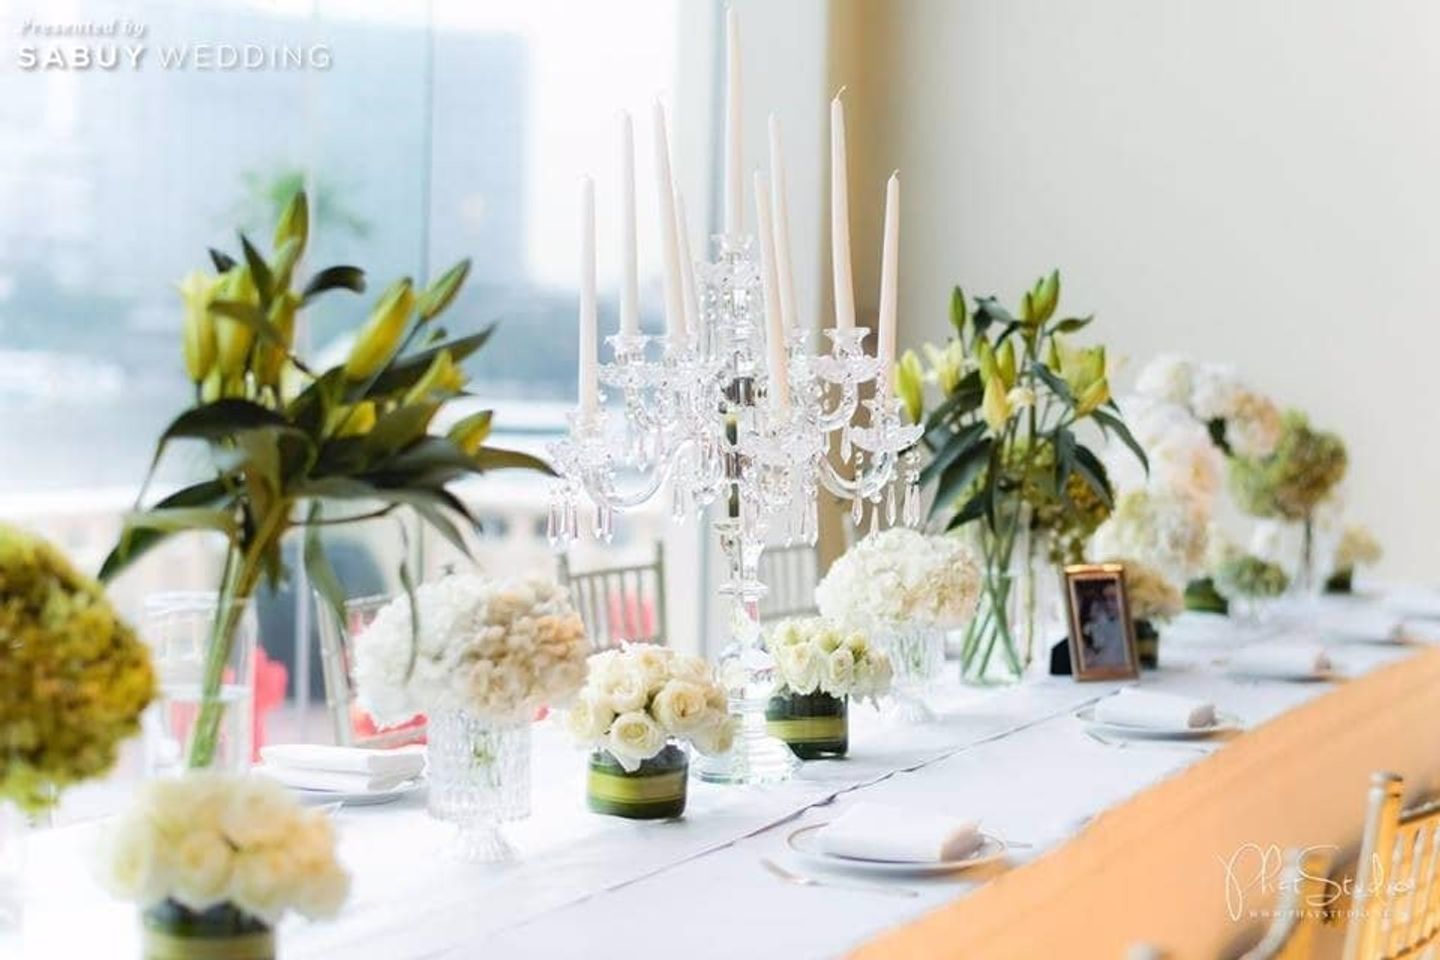 long-table,ตกแต่งงานแต่ง,จัดดอกไม้งานแต่ง รีวิวงานแต่งปาร์ตี้แซ่บซี๊ด ปิดผับรับแสงนีออนไลท์ในธีม Sneaker @The Peninsula Bangkok